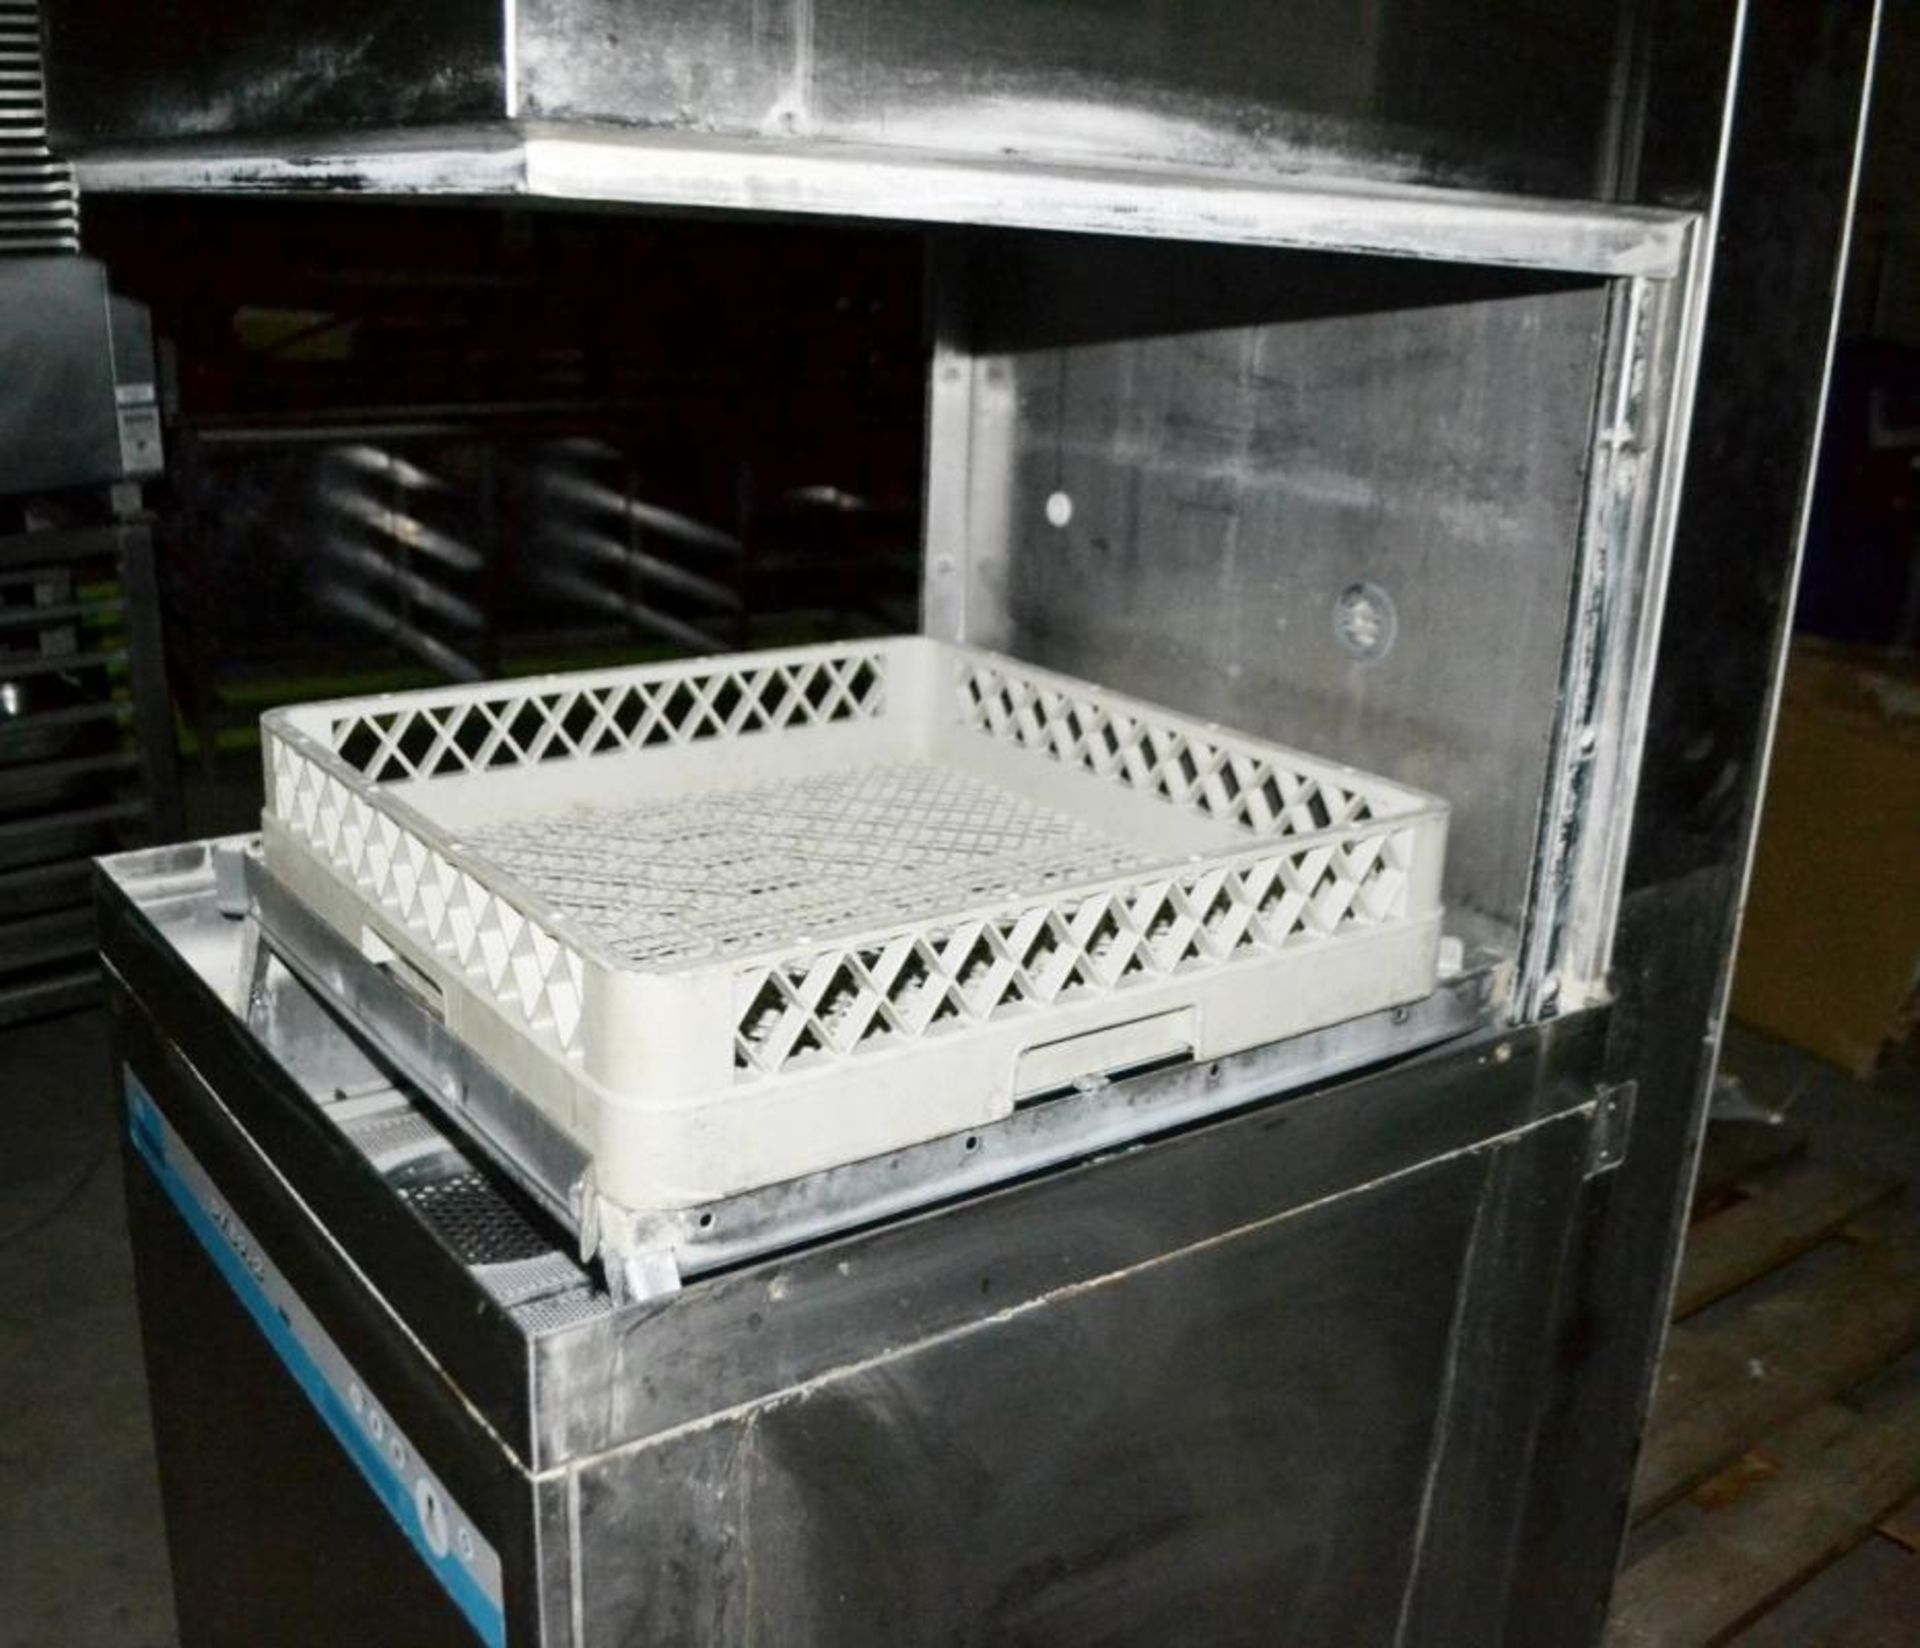 1 x MEIKO DV80.2 Pass Through Commercial Dishwasher - CL011 - Ref: 220 - Location: Altrincham - Bild 5 aus 5